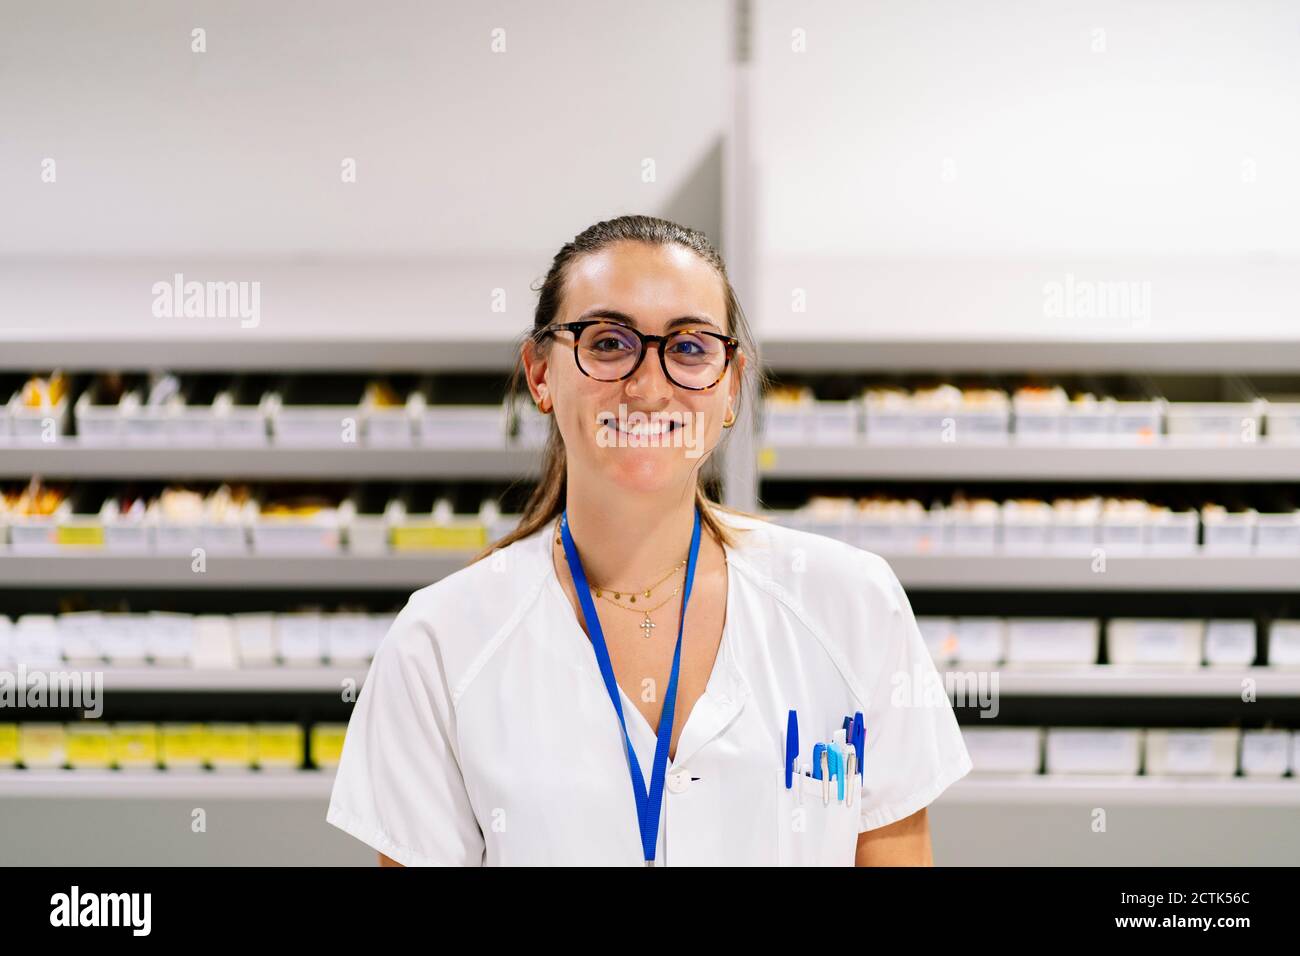 Lächelnde Apothekerin, die im Lagerraum gegen die Medikamentenregale steht Stockfoto